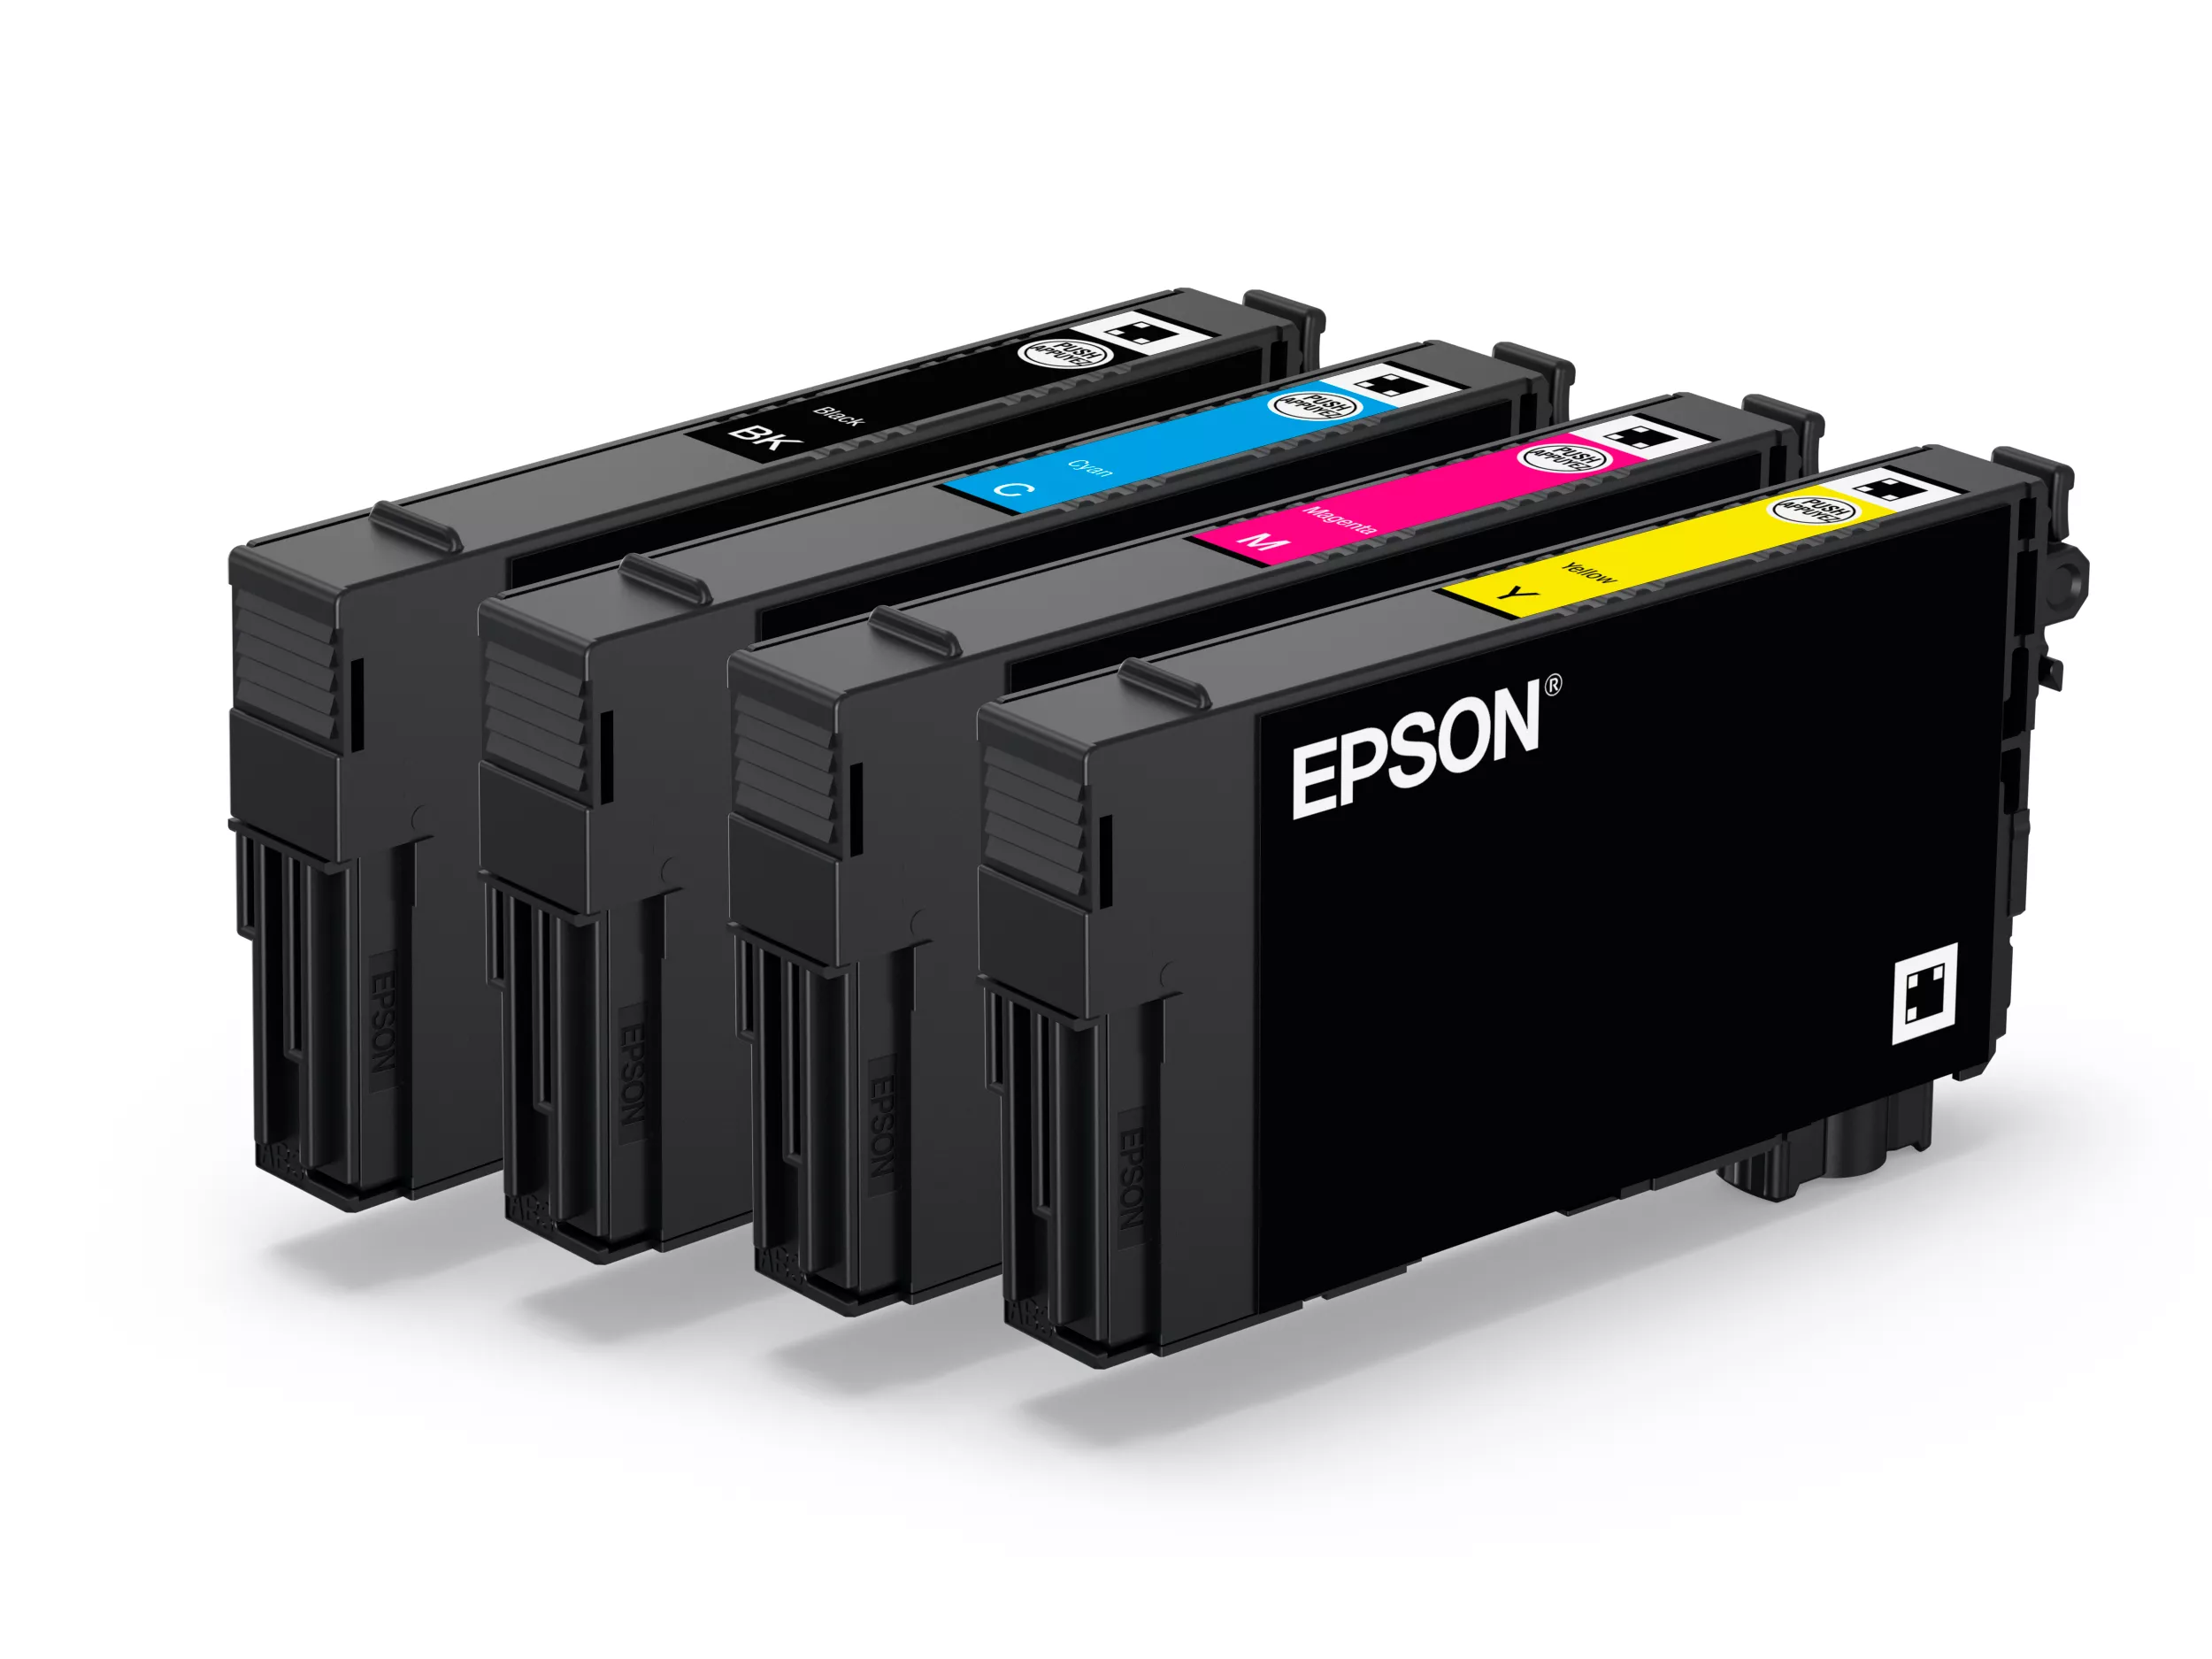 Vente EPSON WorkForce Color Pro WF-C4310DW 21ppm Epson au meilleur prix - visuel 10